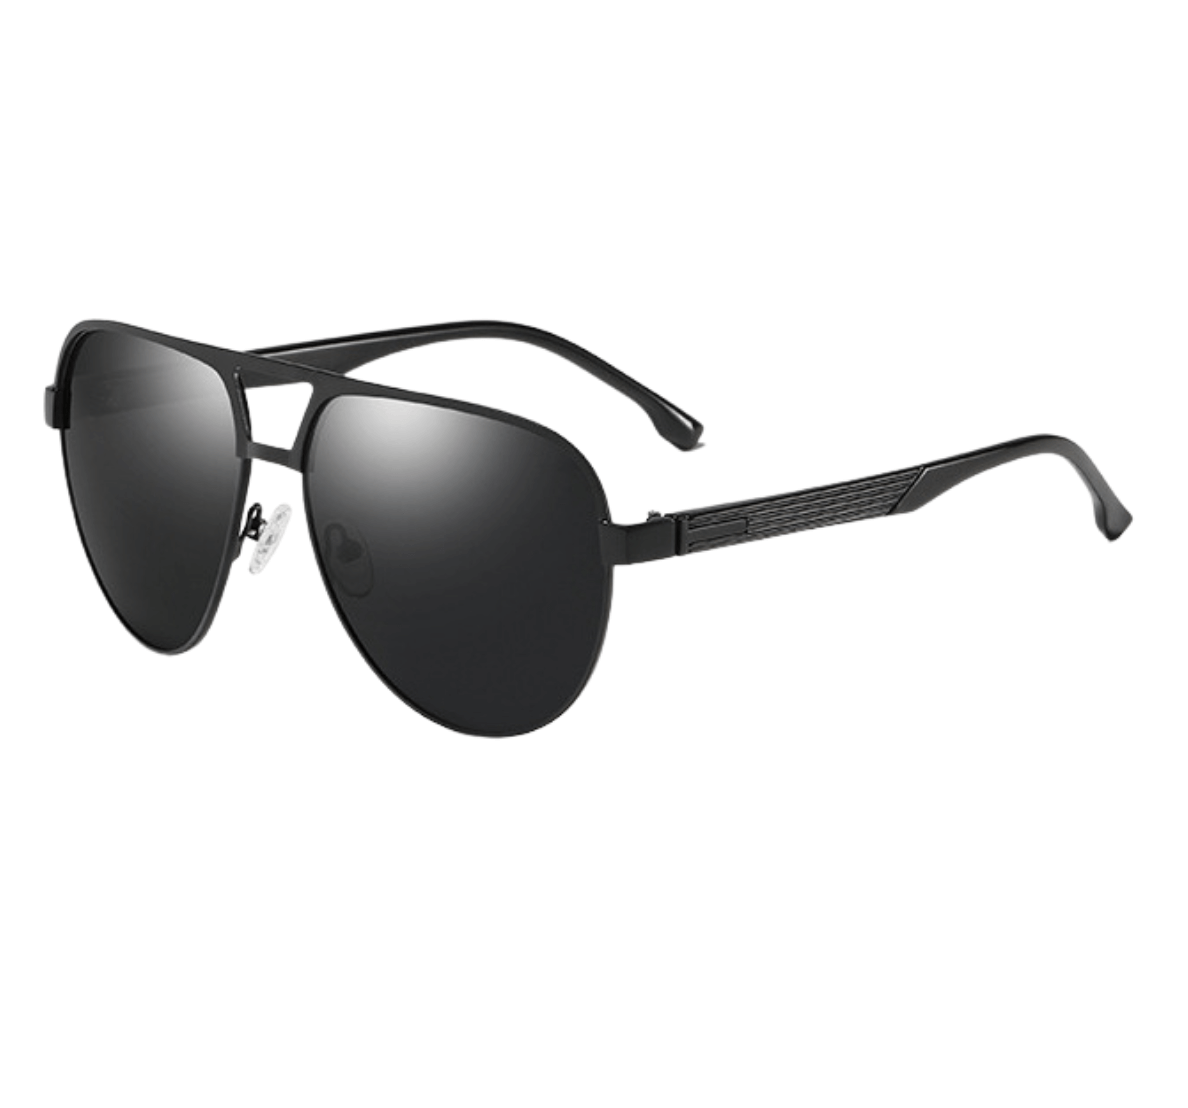 Aviator Sunglasses Black Frame Black Lens, high quality sunglasses wholesale, aviator sunglasses manufacturer, aviator sunglasses China